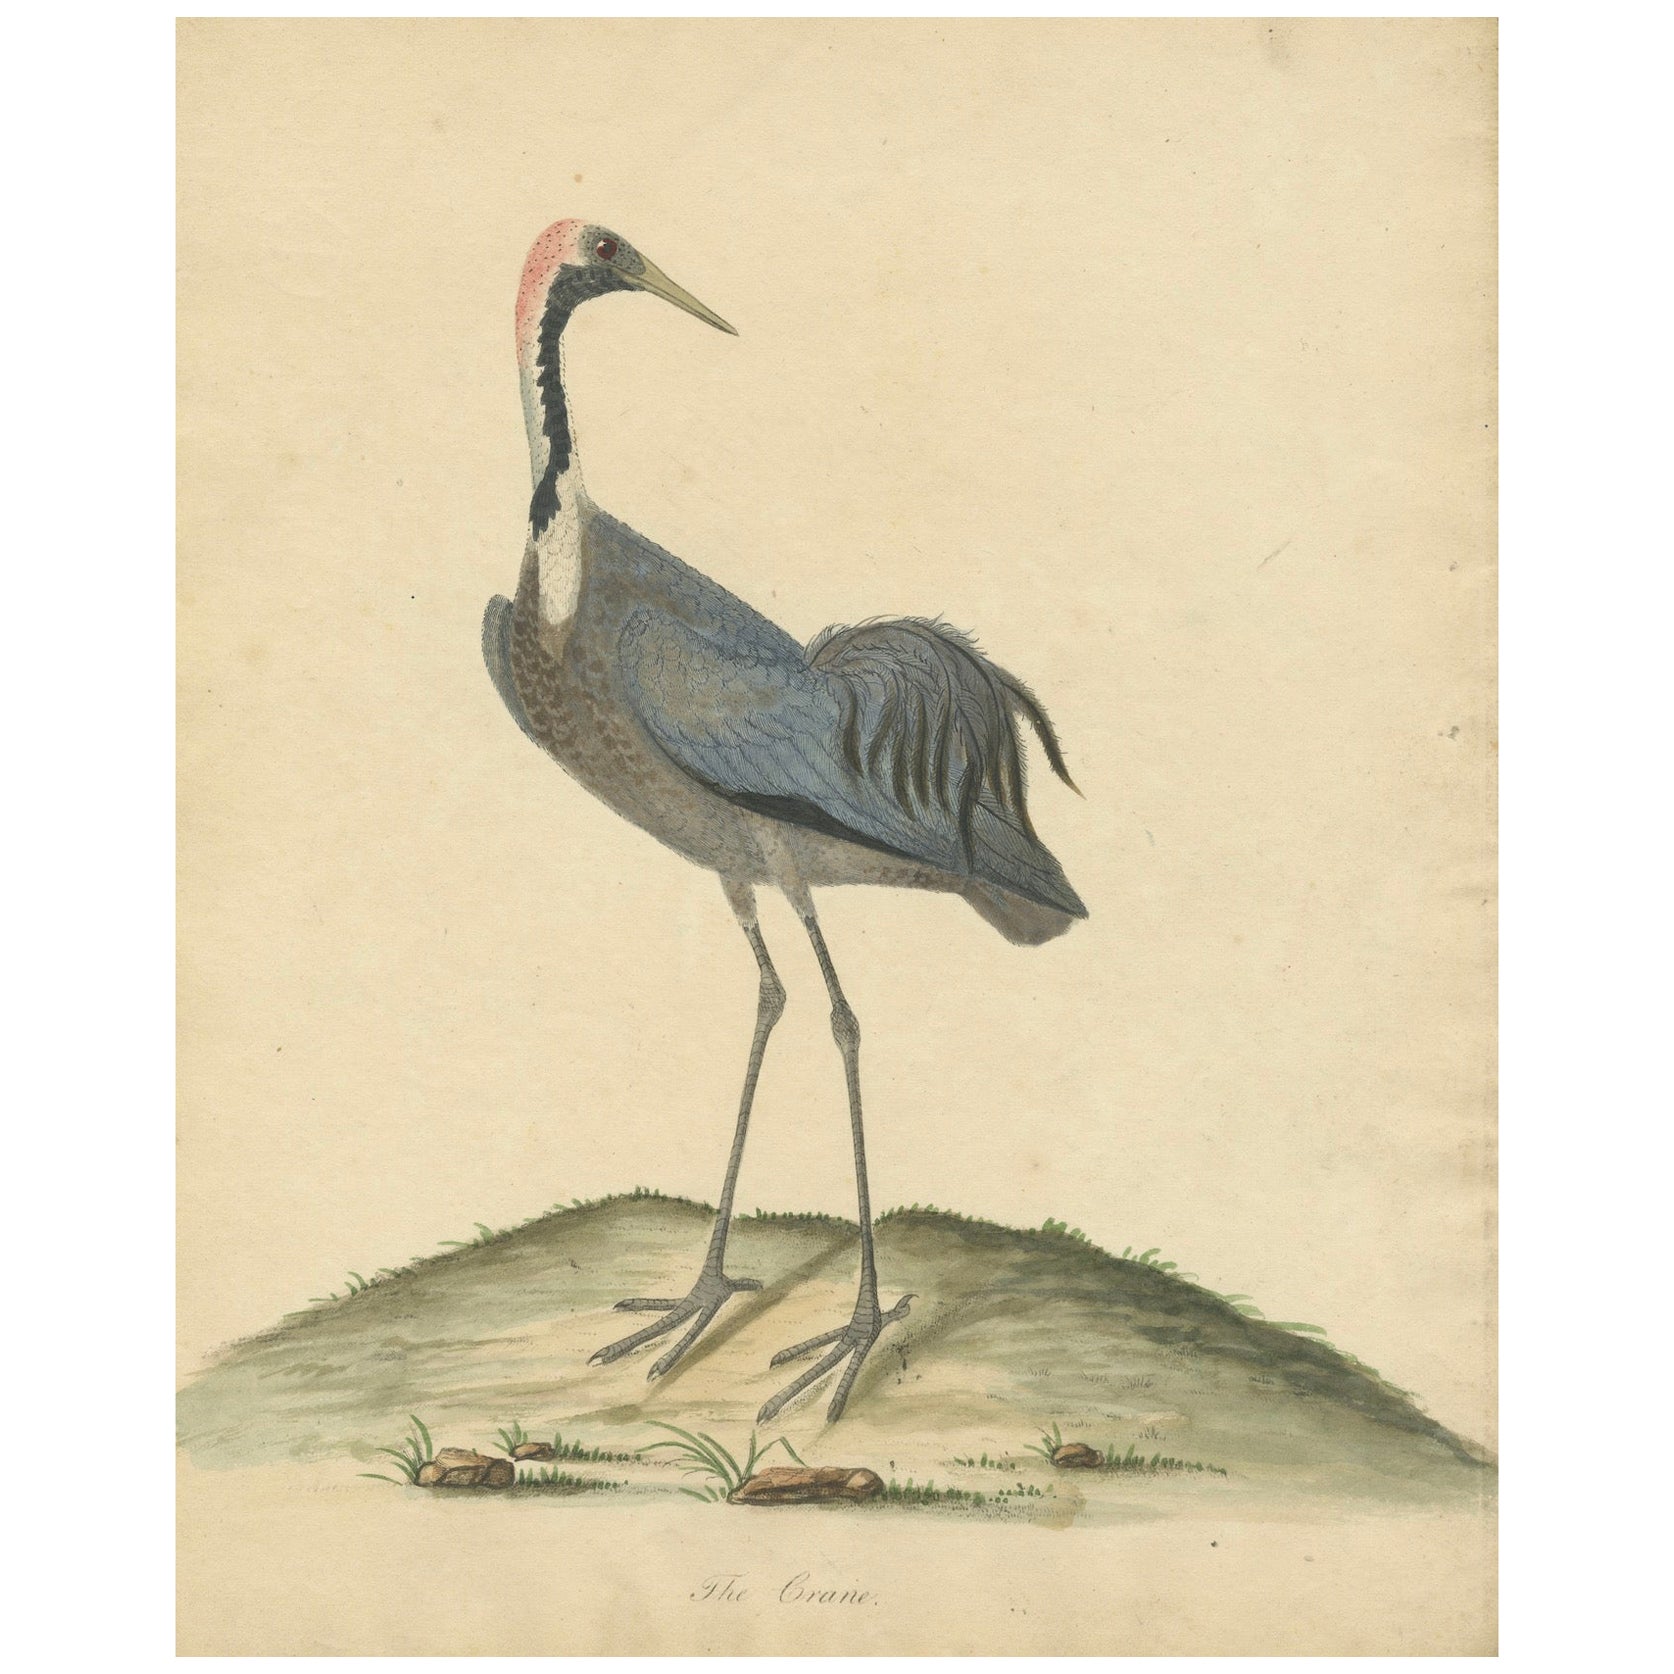 Originaler antiker handkolorierter Kupferstich eines Cranes, 1794